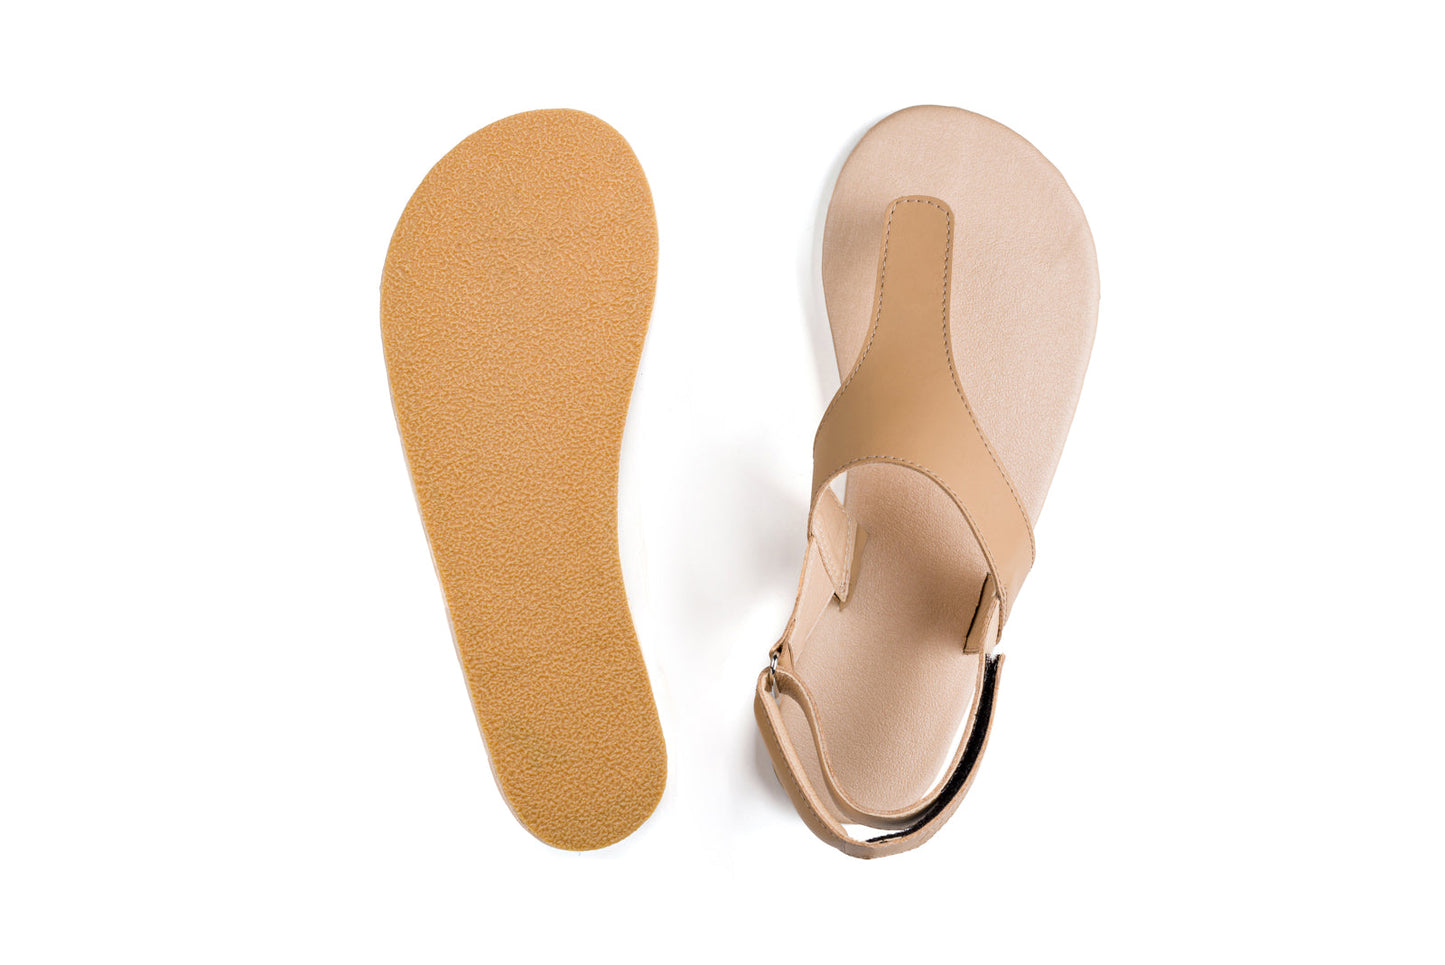 Ahinsa Simple barfods sandaler til kvinder i farven beige, saal